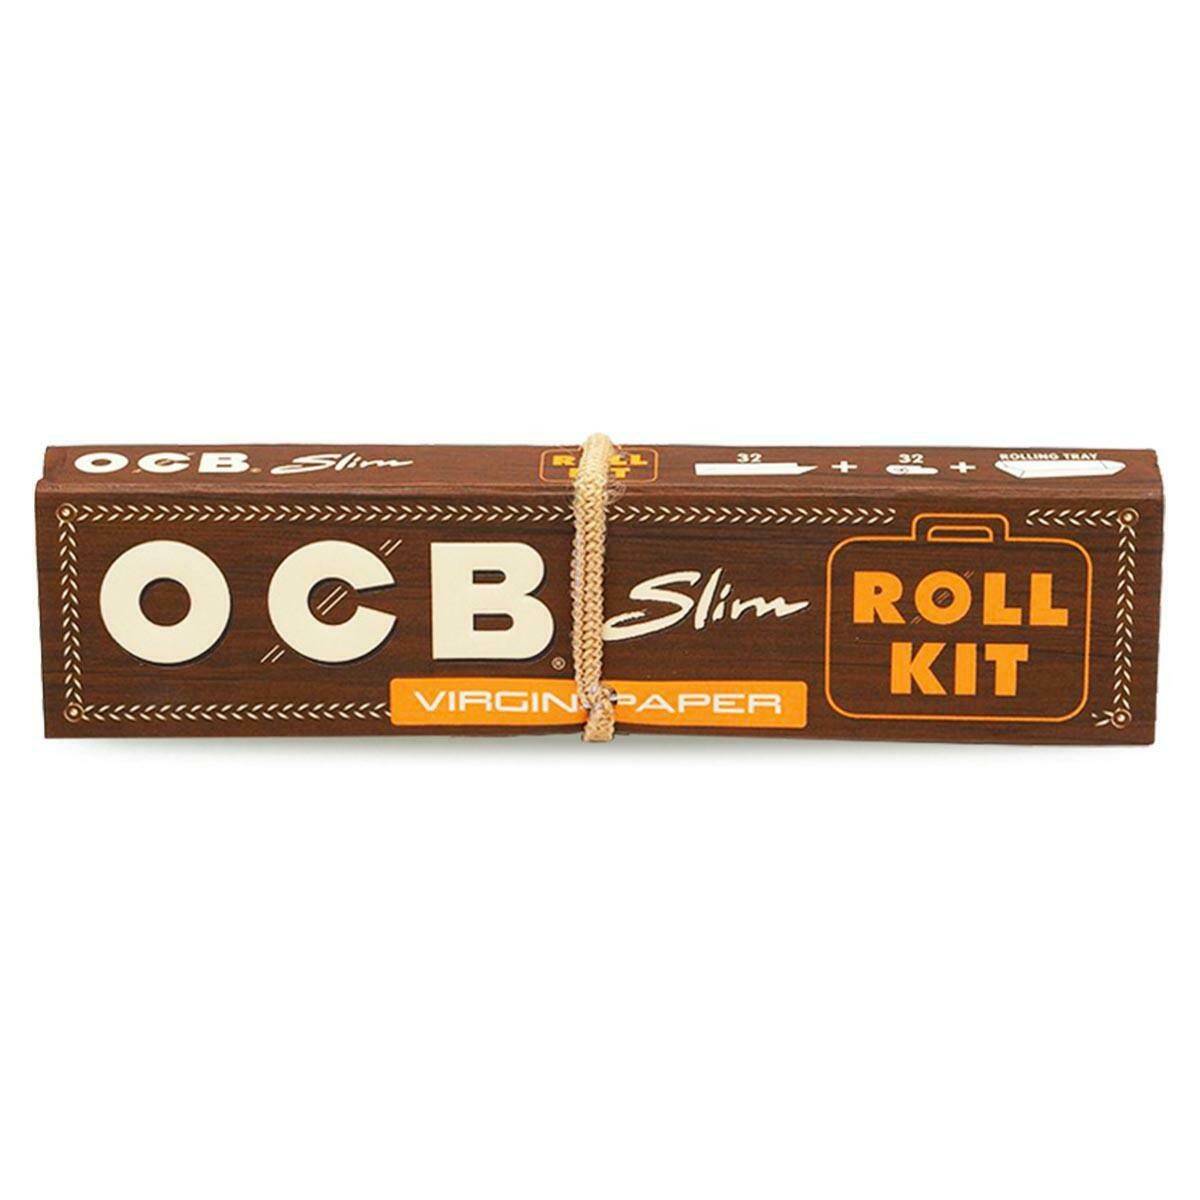 OCB Virgin Slim Roll Kit + Filters